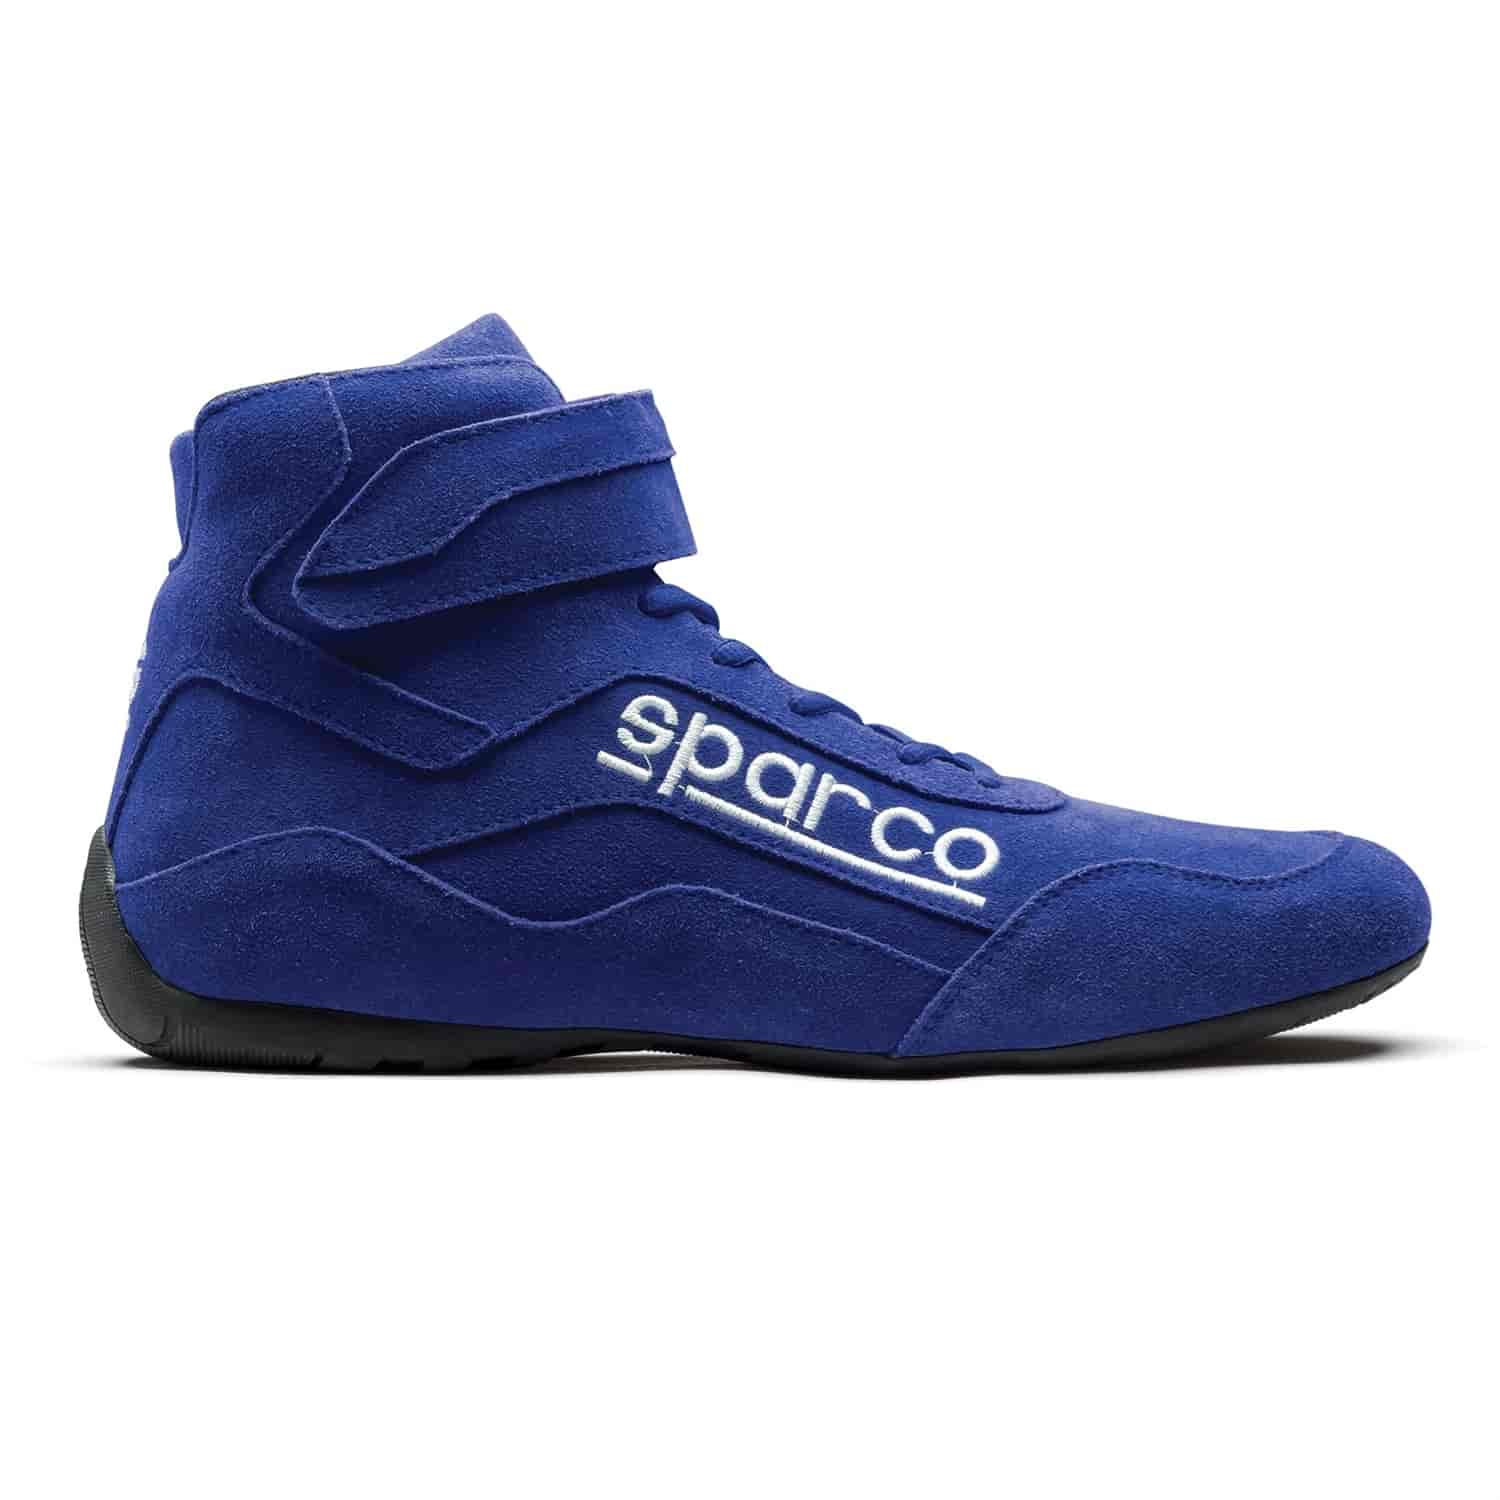 Race 2 Shoe Size 12.5 - Blue